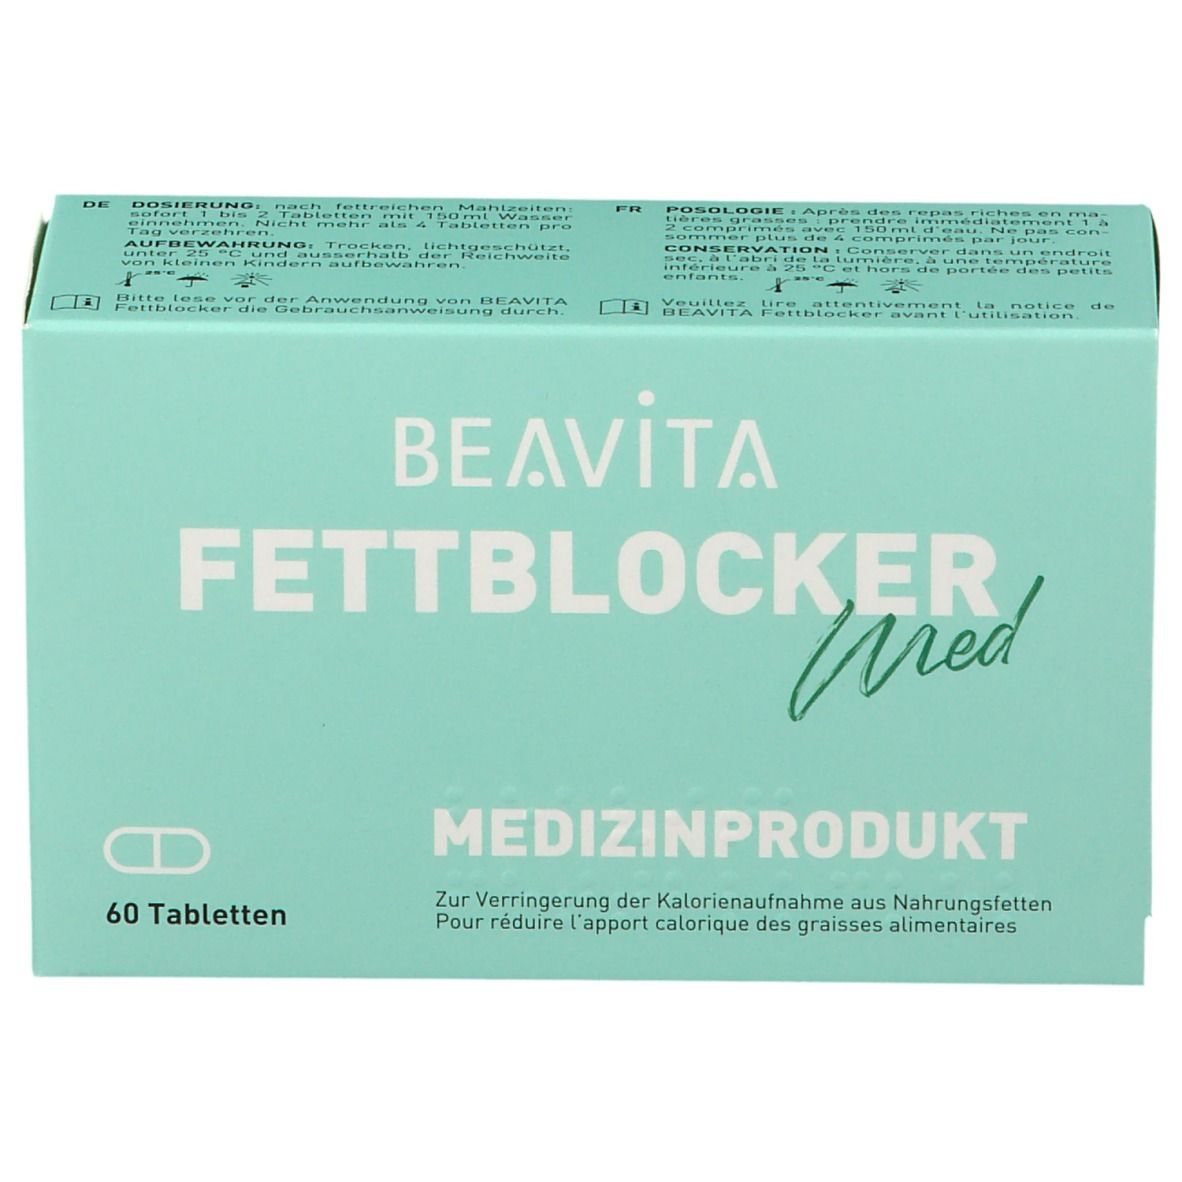 BEAVITA Fettblocker